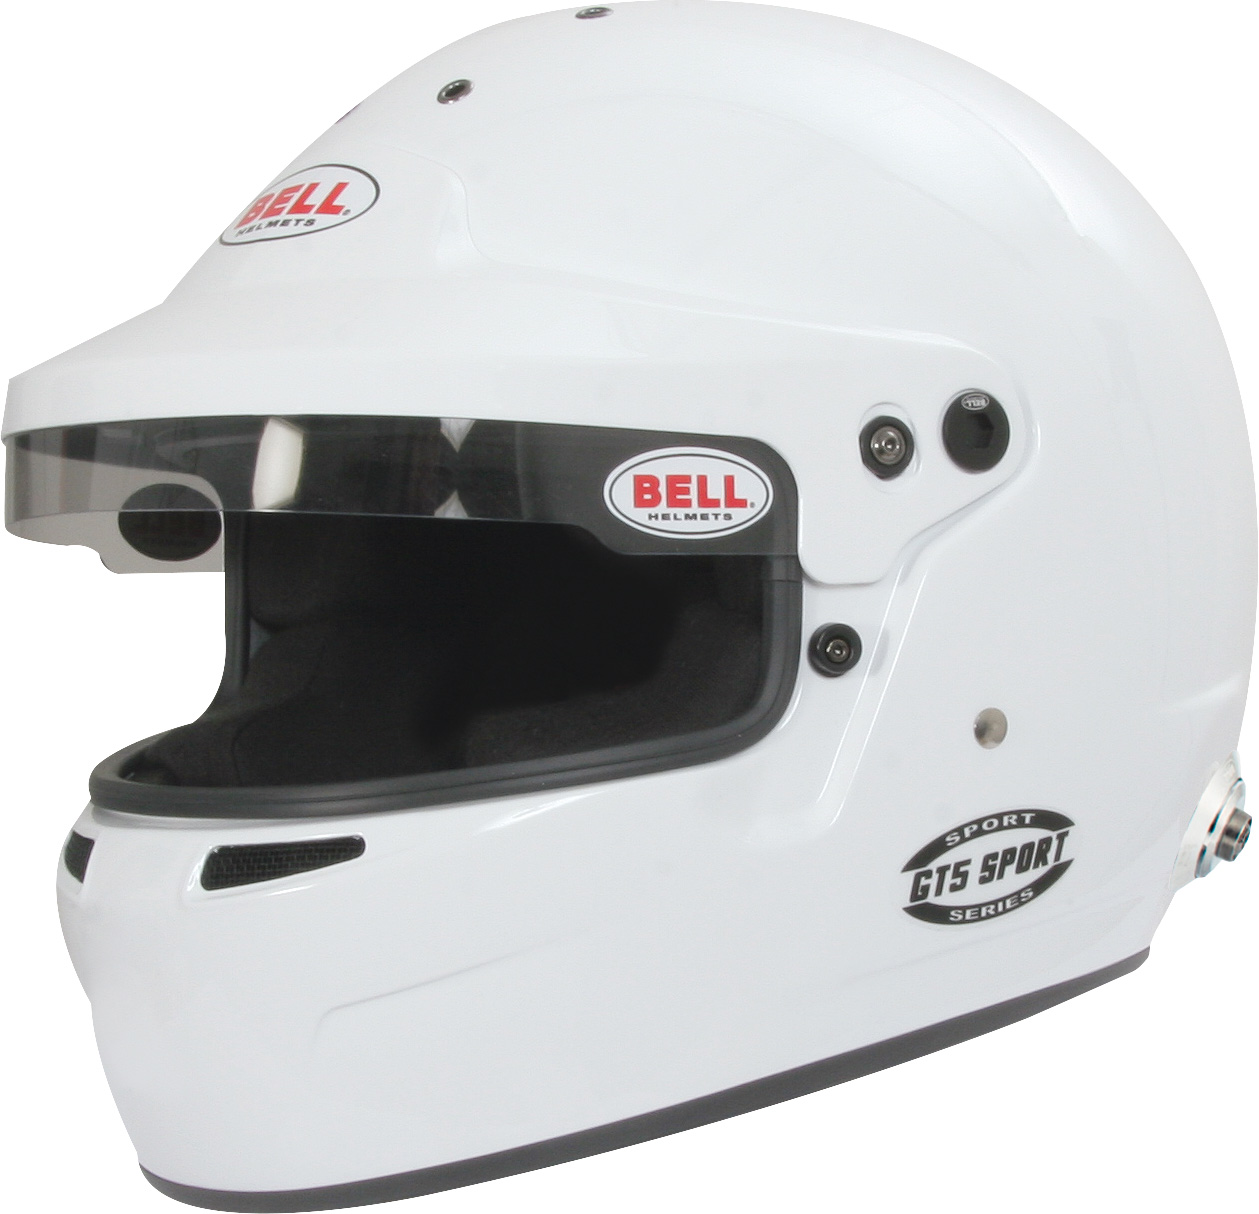 BELL Helm GT5 Sport Touring